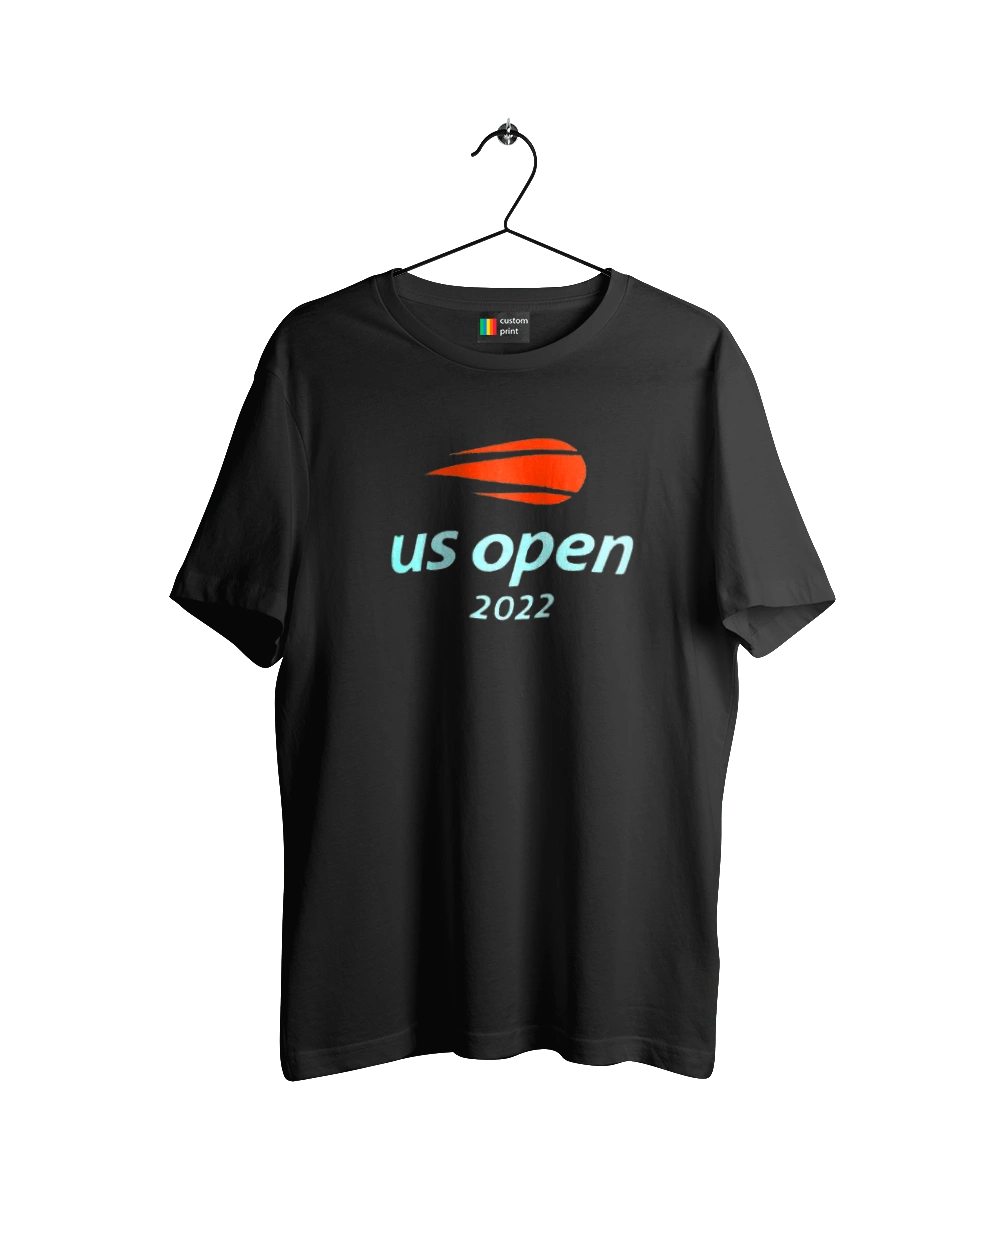 Тенісний турнір US Open 2022